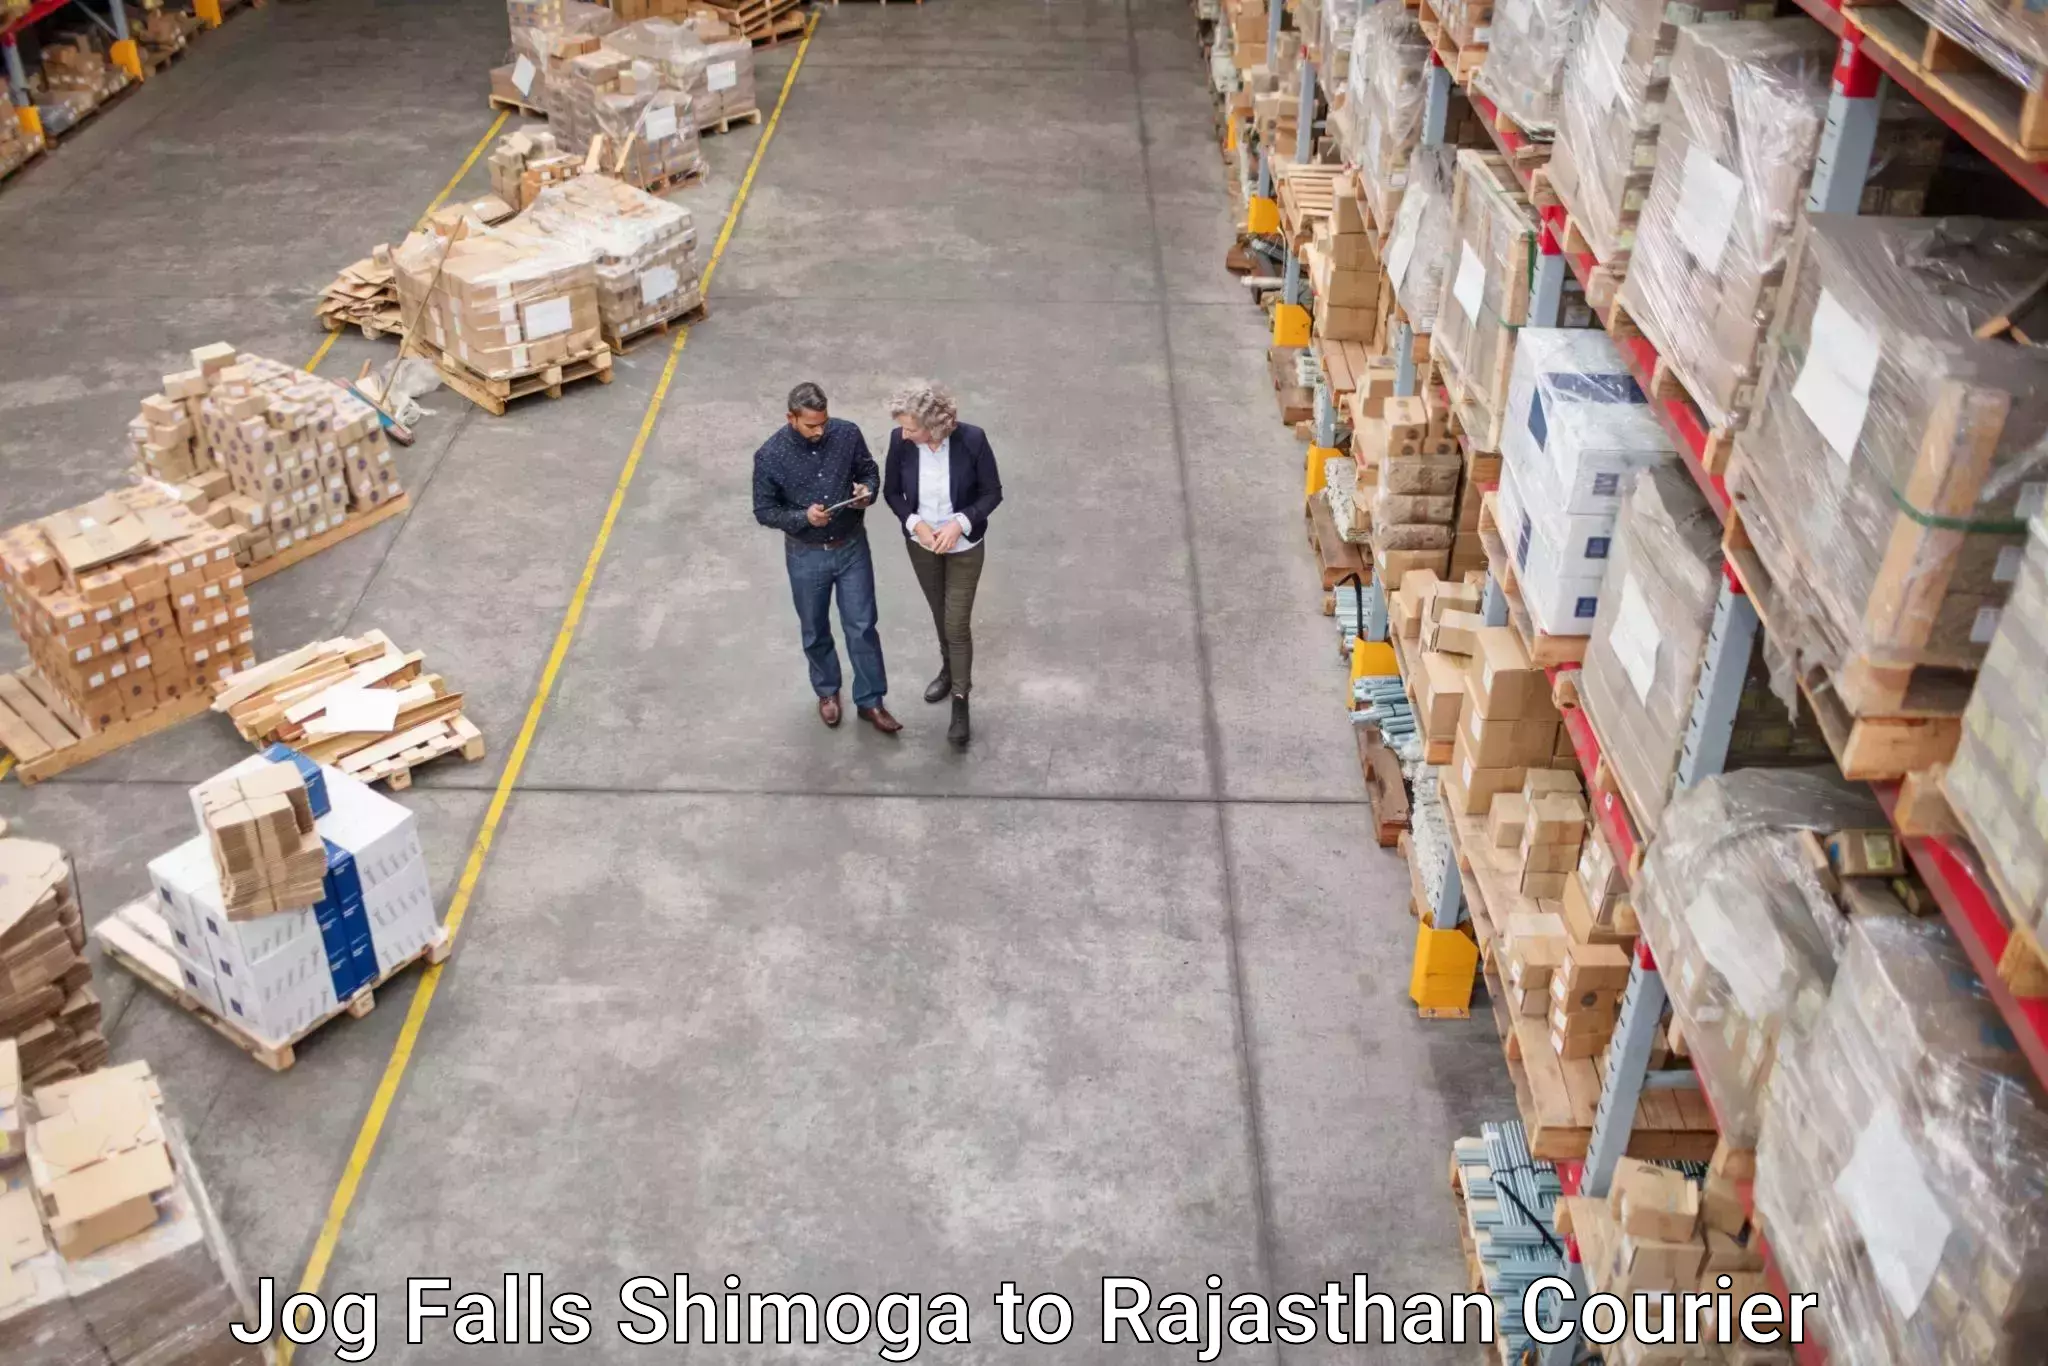 Reliable courier services Jog Falls Shimoga to Kishangarh